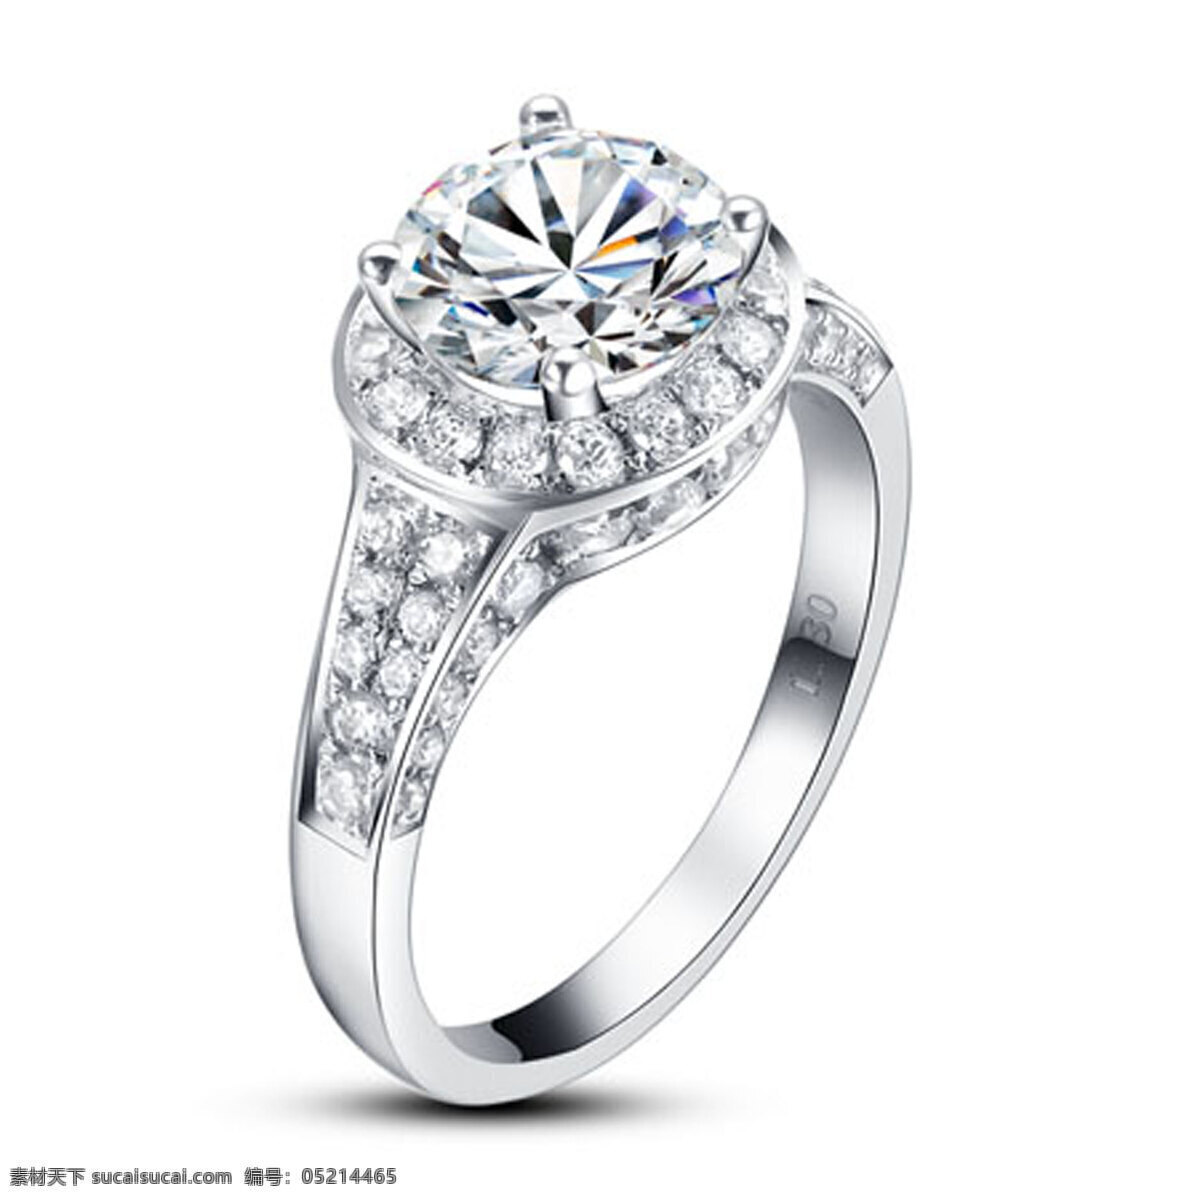 钻石 戒指 白金 婚戒 饰品 首饰 镶嵌 珠宝 钻戒 女戒 求婚戒指